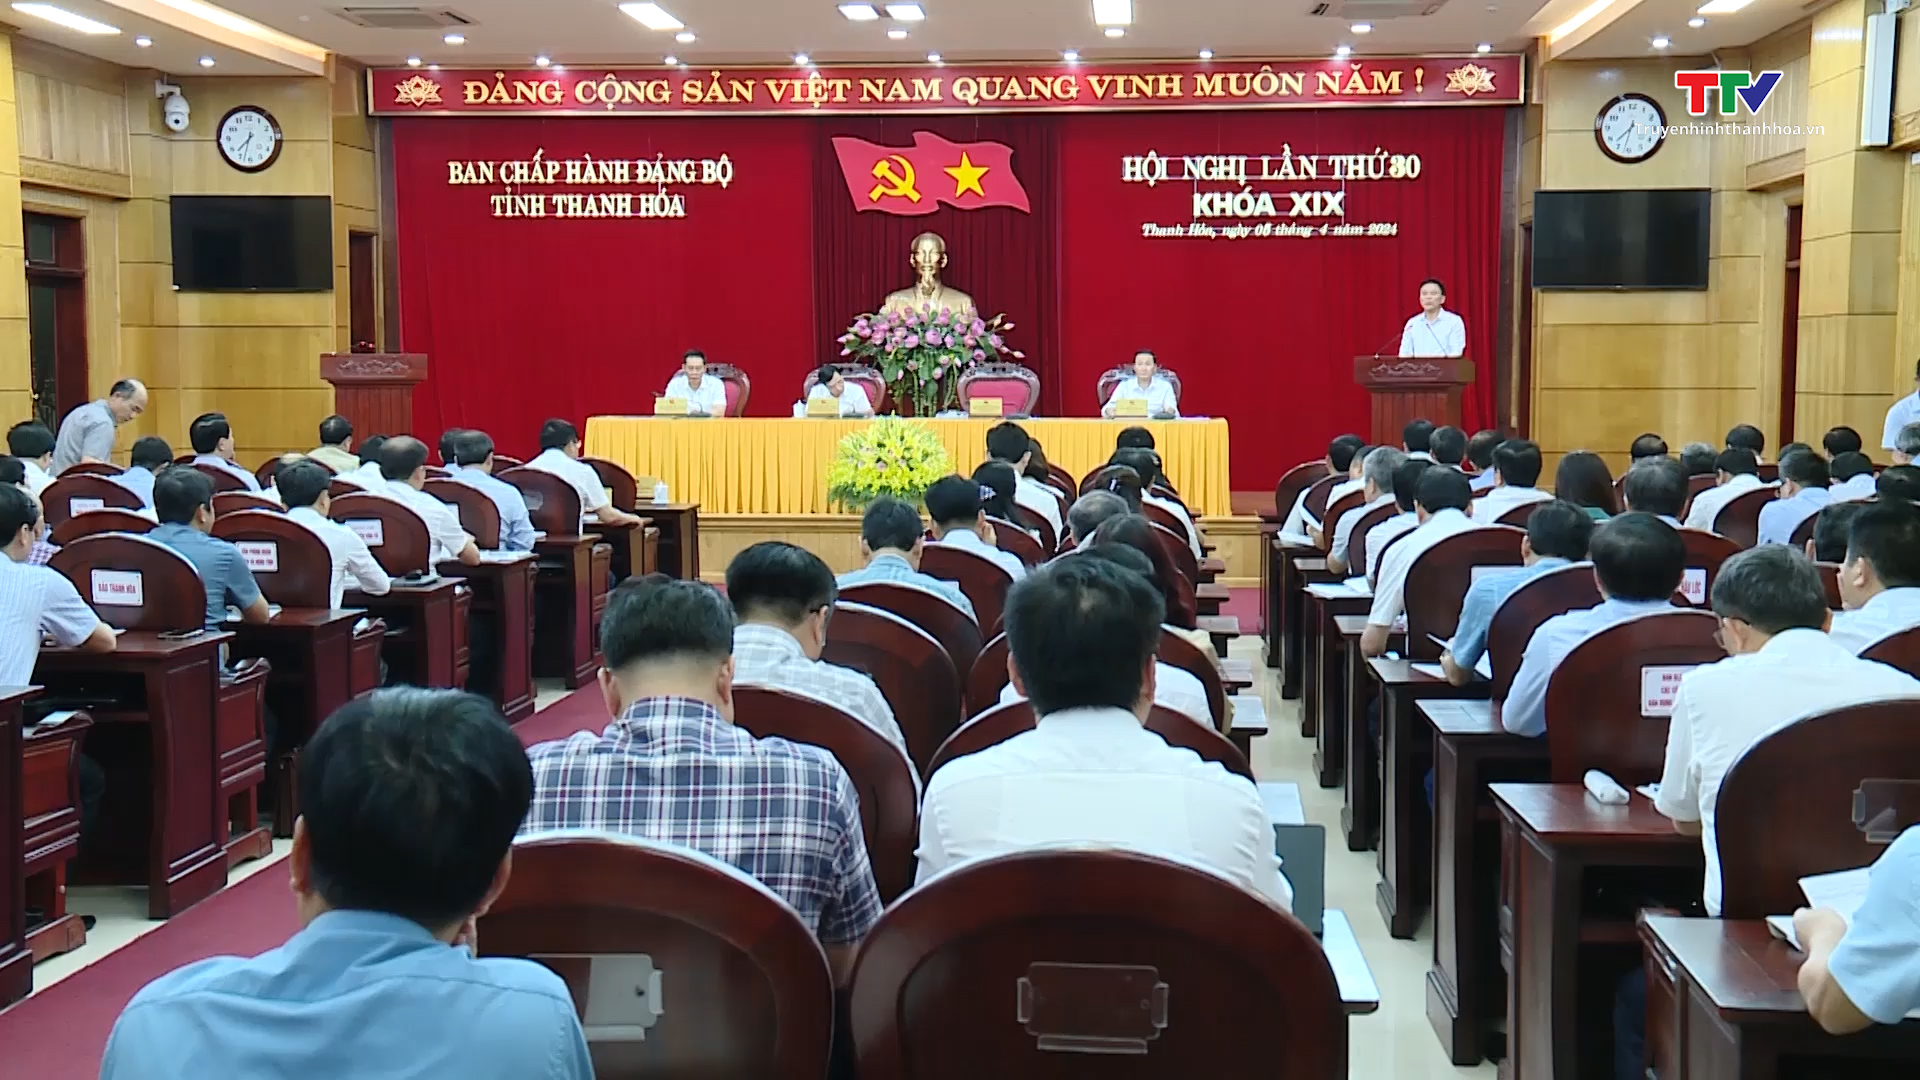 Nhiều vấn đề quan trọng được đưa ra thảo luận tại Hội nghị lần thứ 30 Ban Chấp hành Đảng bộ tỉnh khoá XIX- Ảnh 1.